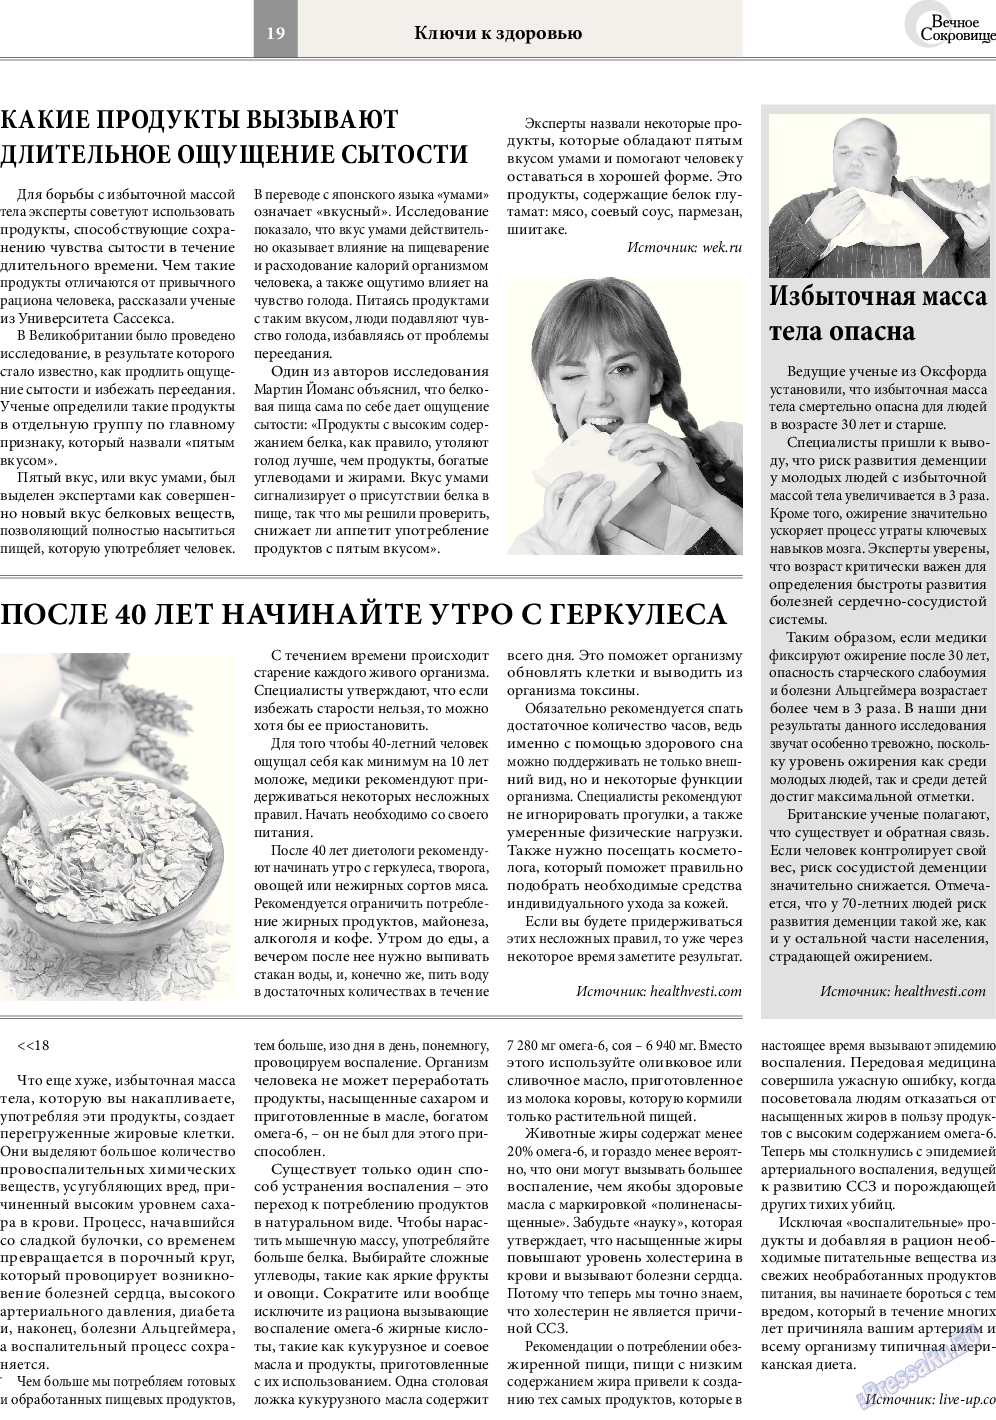 Вечное сокровище, газета. 2014 №5 стр.19